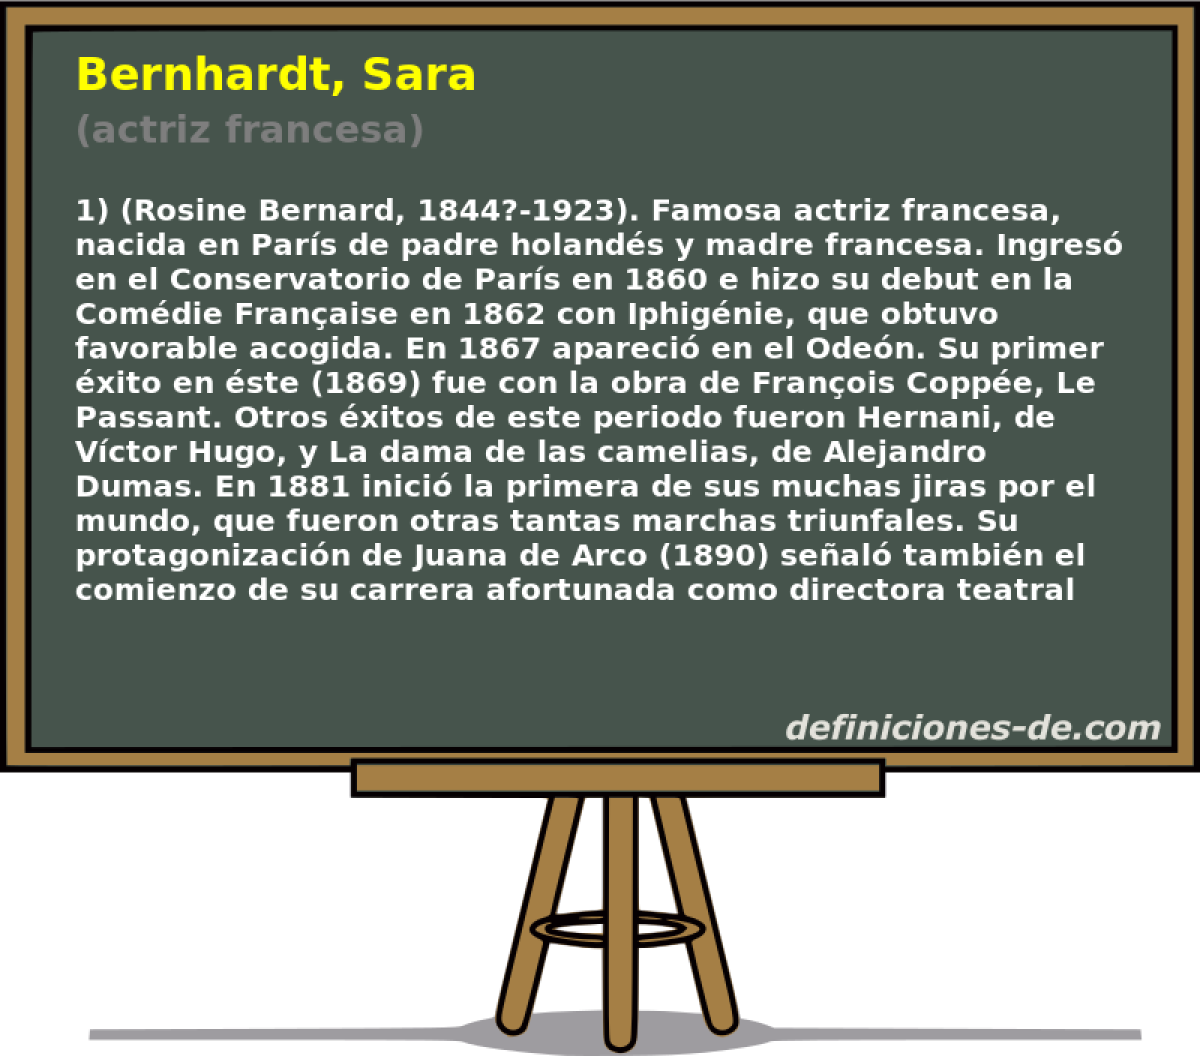 Bernhardt, Sara (actriz francesa)